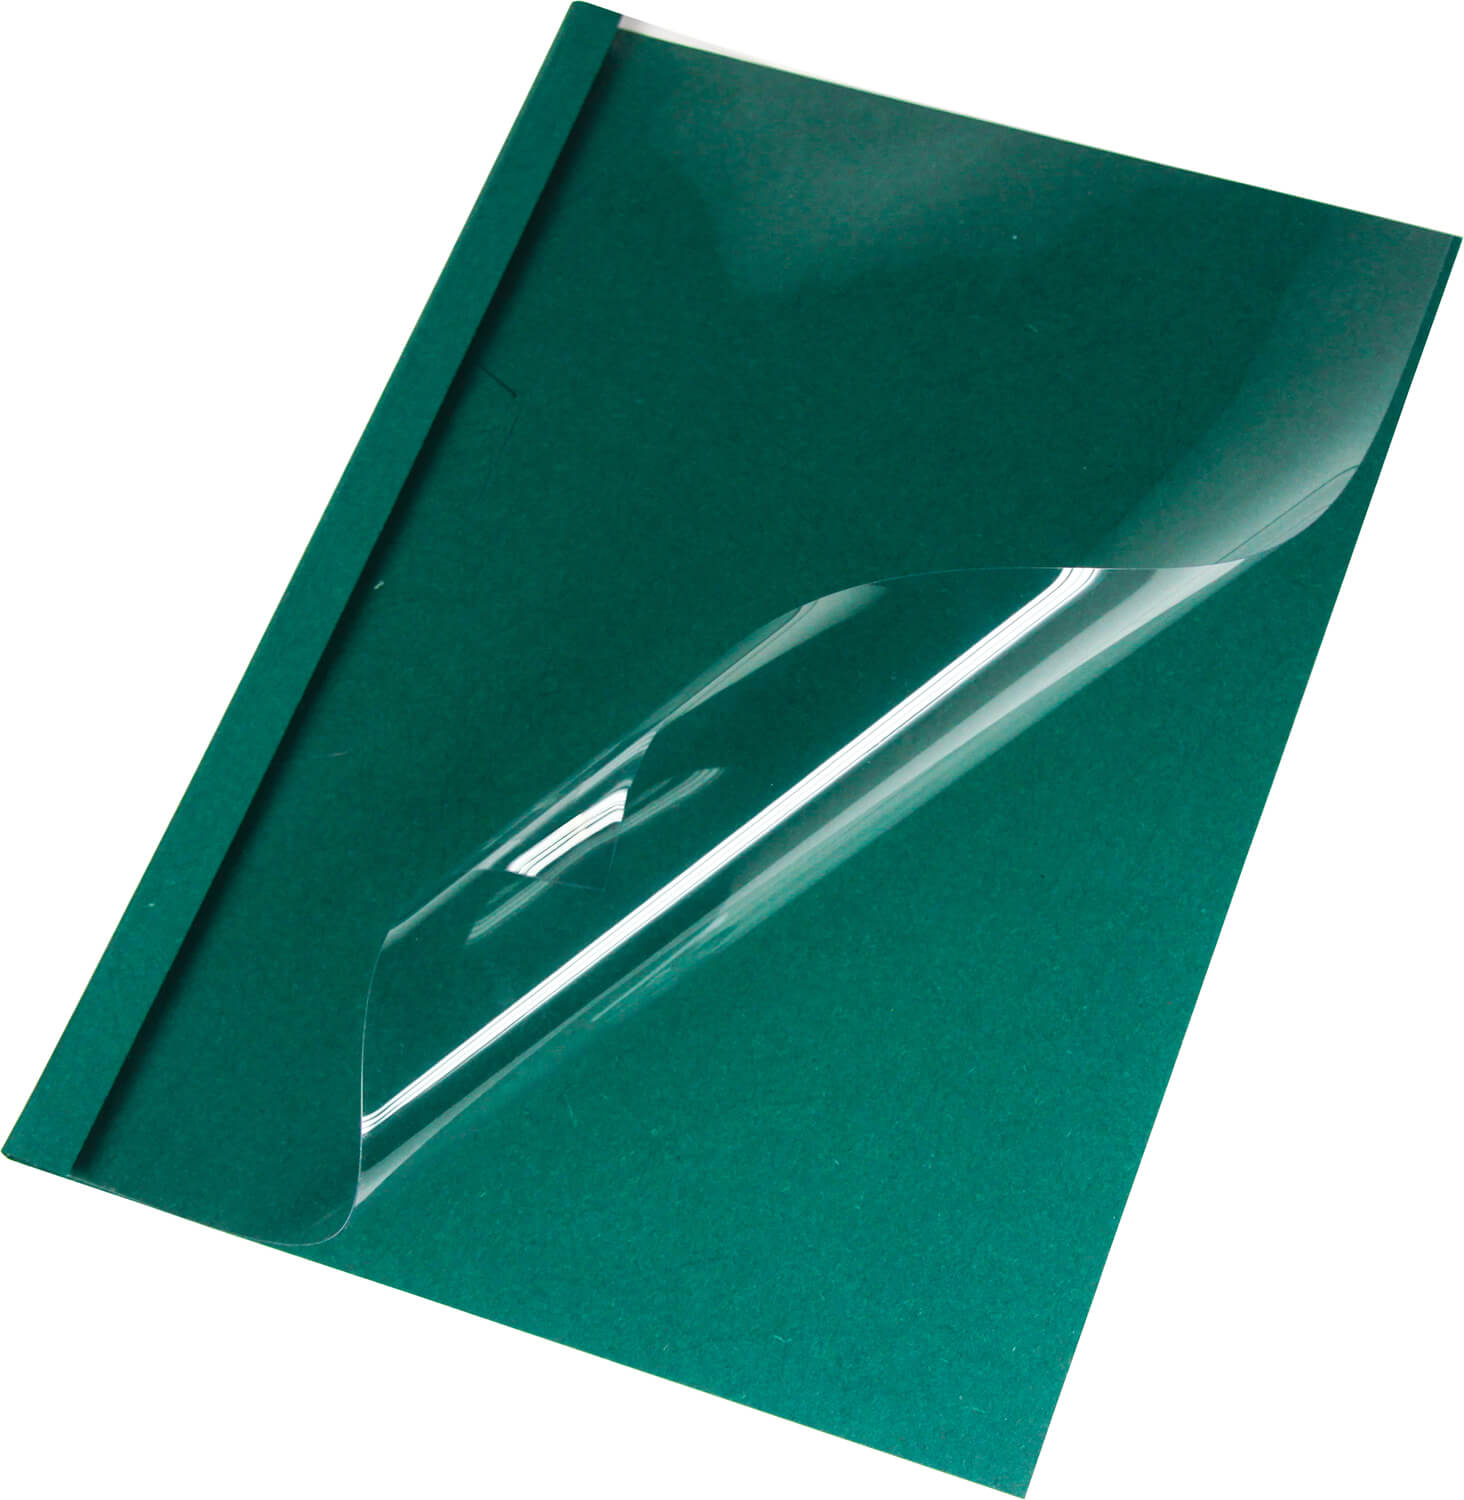 Thermobindemappen Leinen A4, grün 6 mm, matte Vorderseite | Bestnr. LMG-BMDLEM-GR-R6